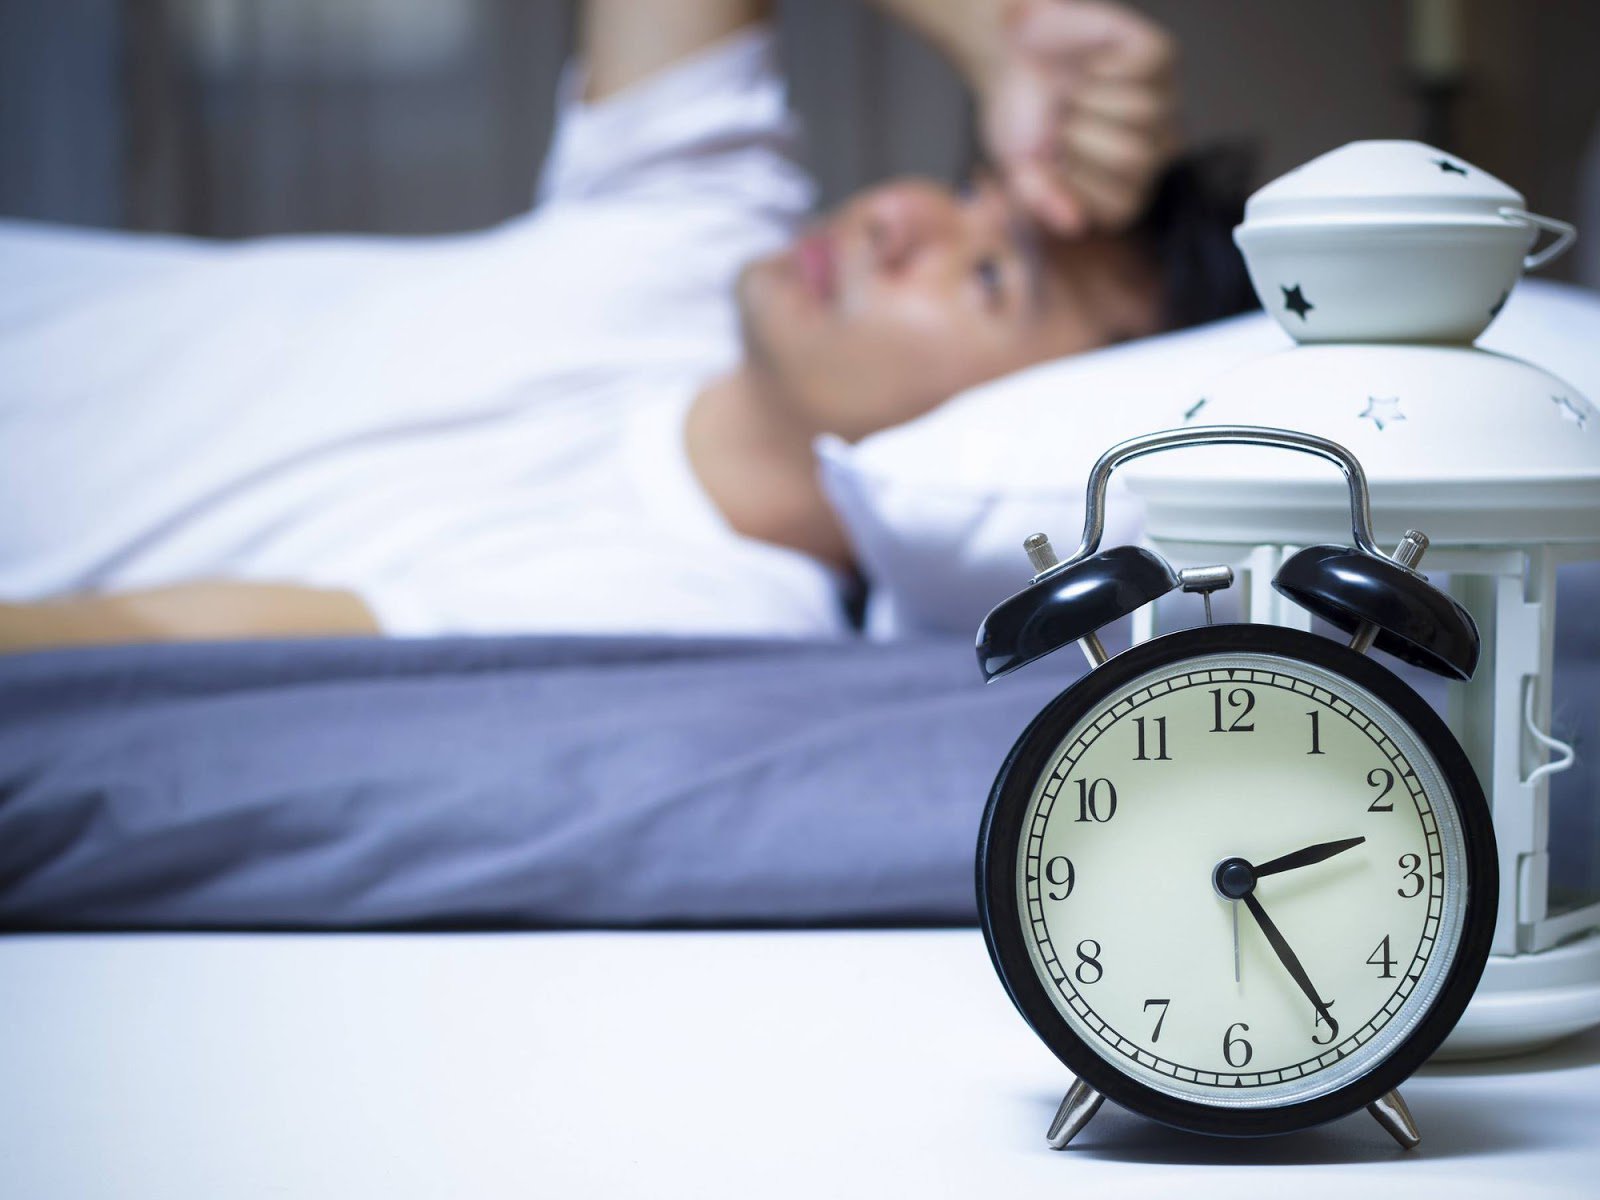 Mất ngủ gây ảnh hưởng nhiều đến sức khỏe và sinh hoạt của người bệnh